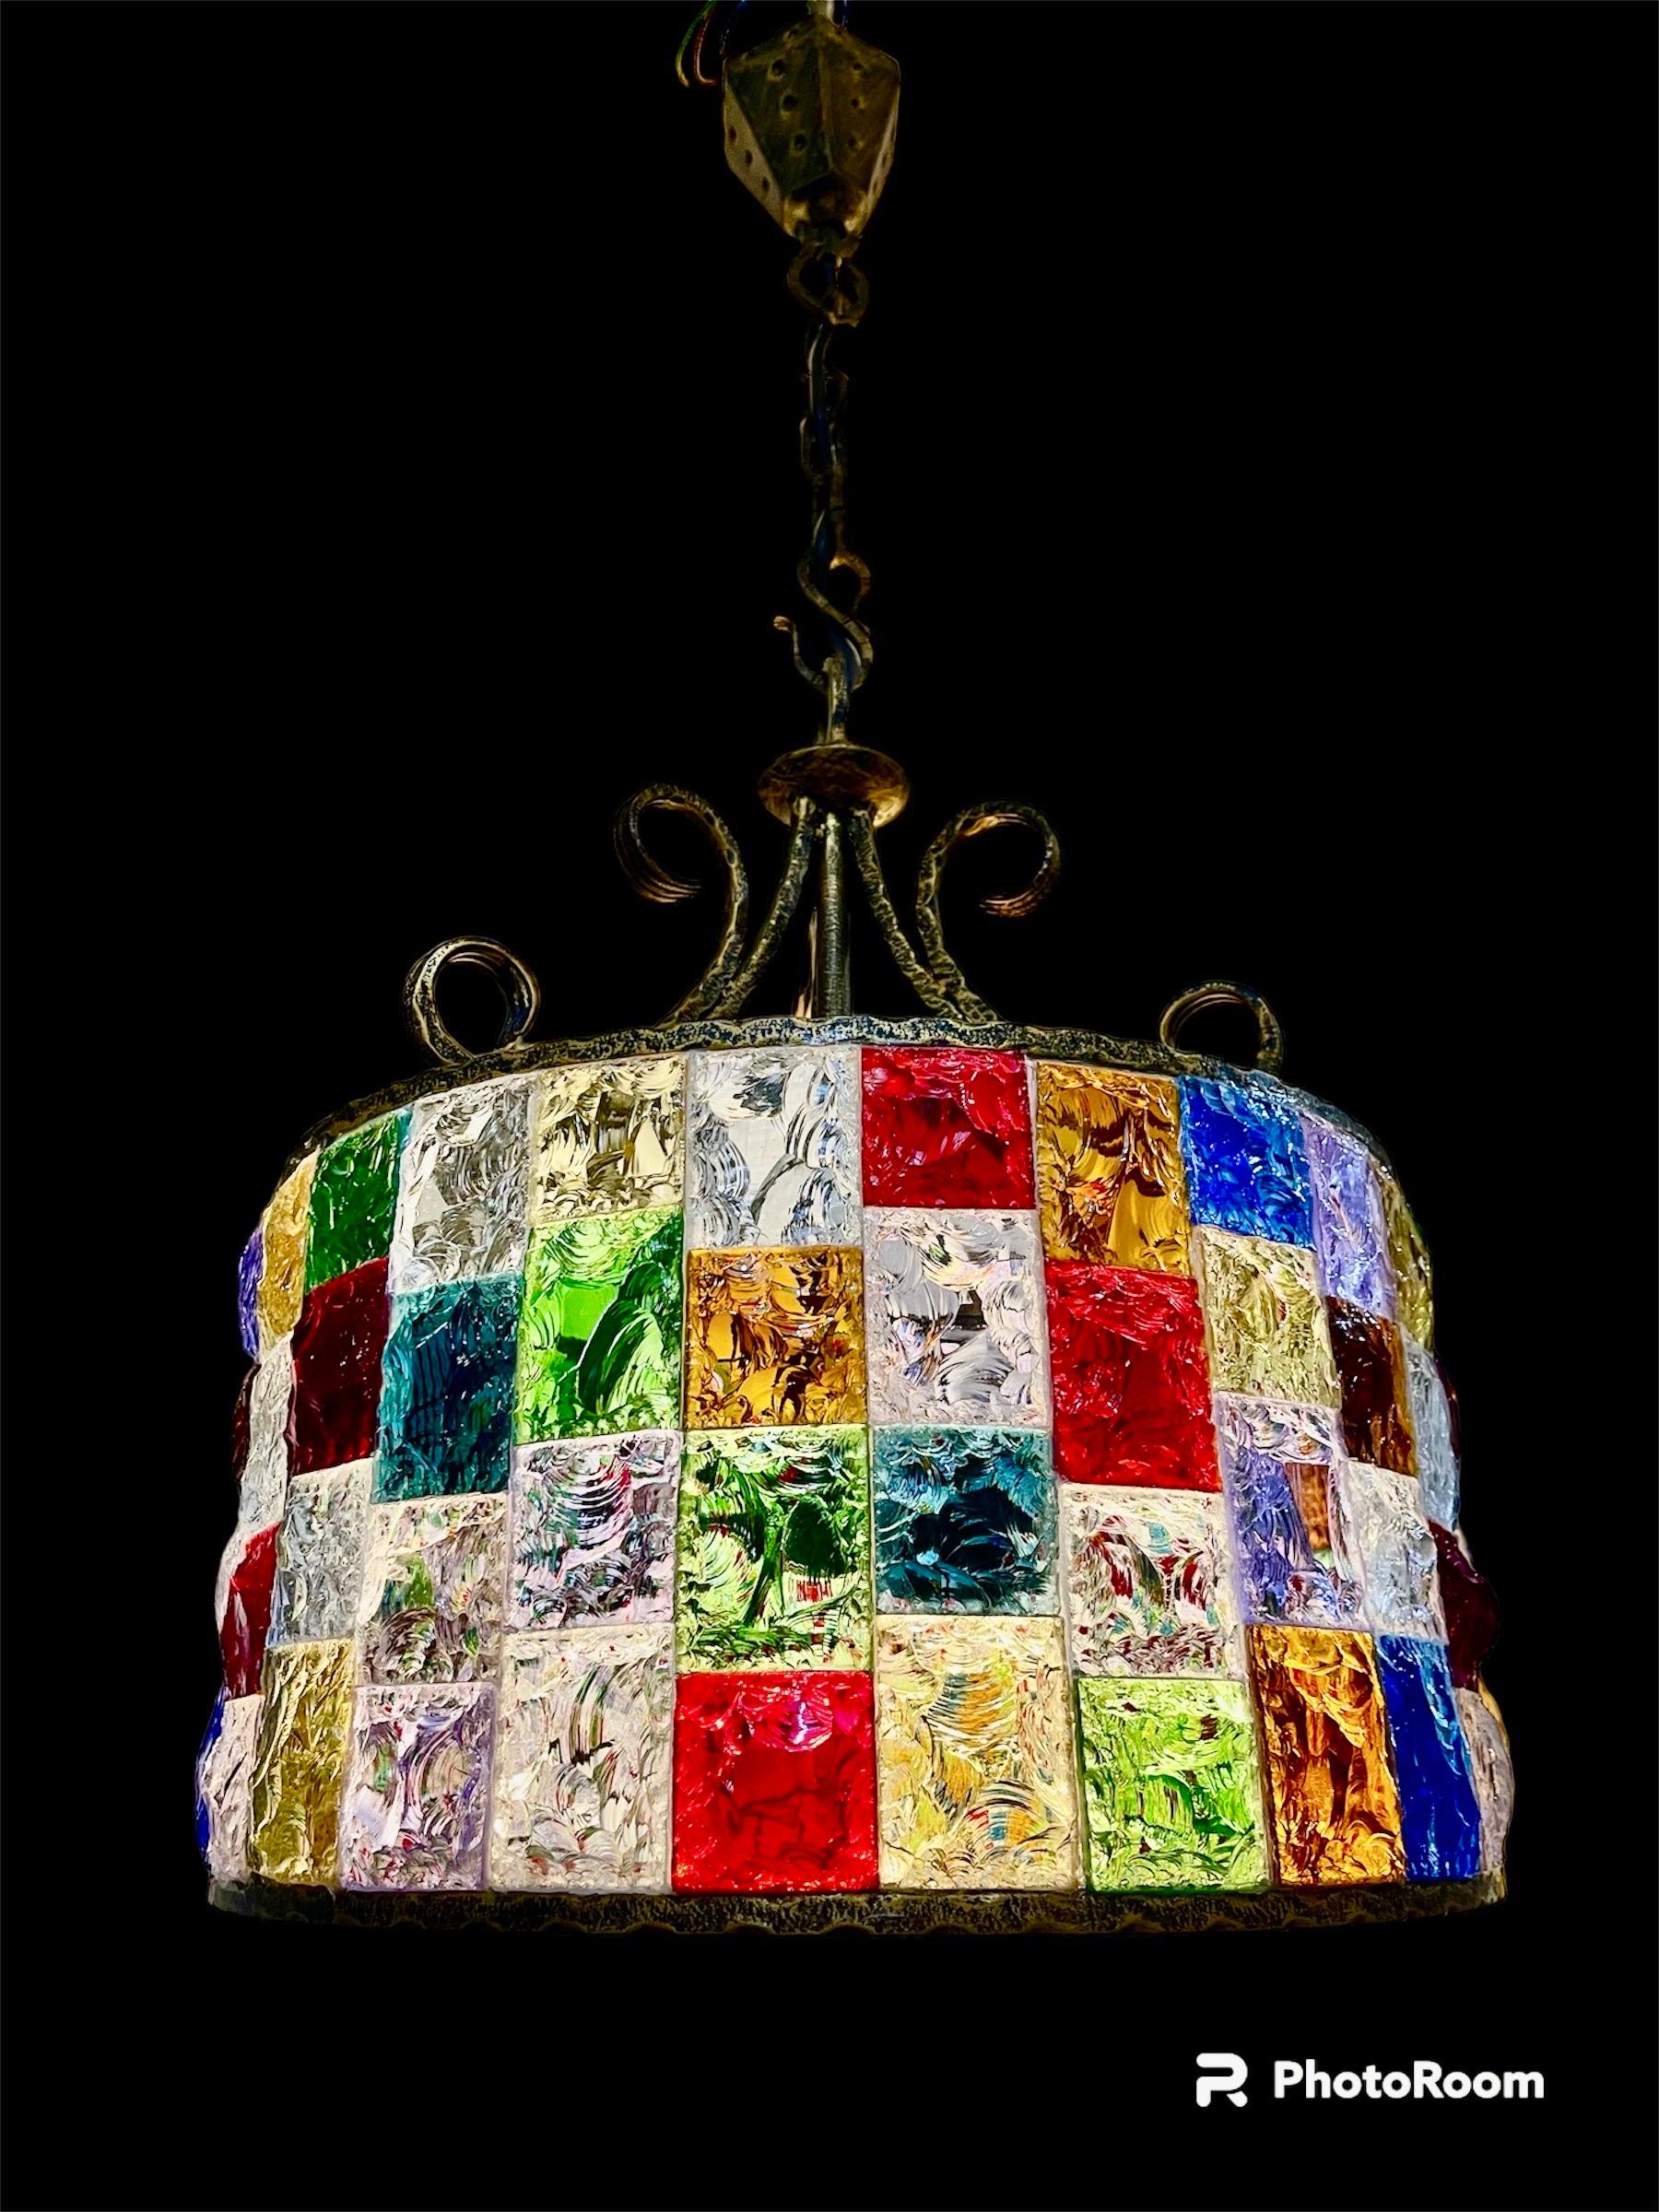 Superbe lustre en verre multicolore Murano avec structure en fer brutalisat . Le design et la qualité du verre font de cette pièce le meilleur du design italien.
Ce lustre unique en verre multicolore Murano est exceptionnel.

Ces pièces de verre